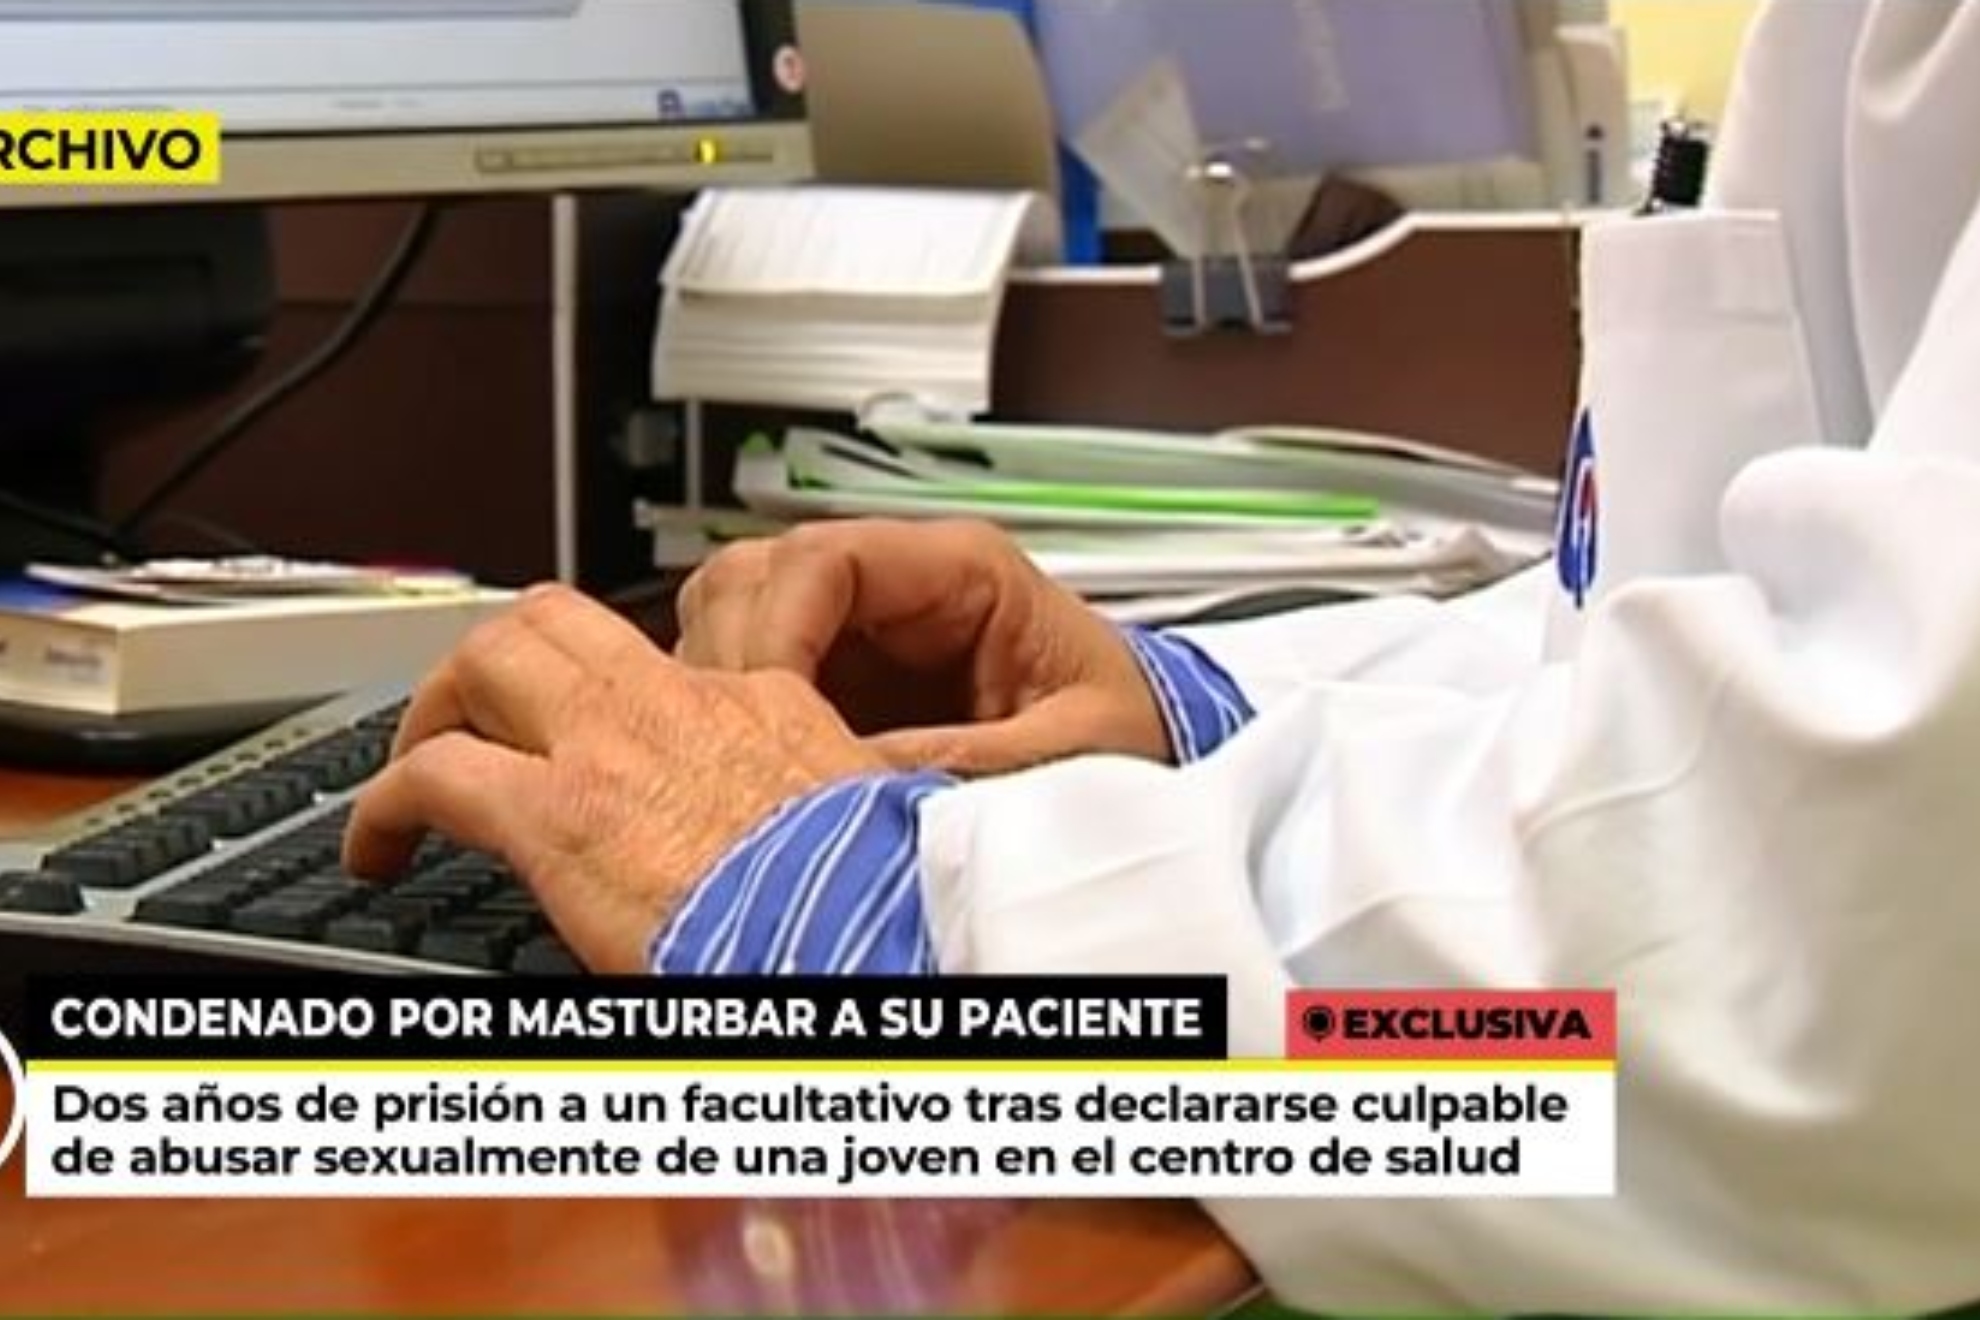 Un mdico, condenado a dos aos de crcel por masturbar a una paciente: "Solo estaba interesado en mejorar su salud"